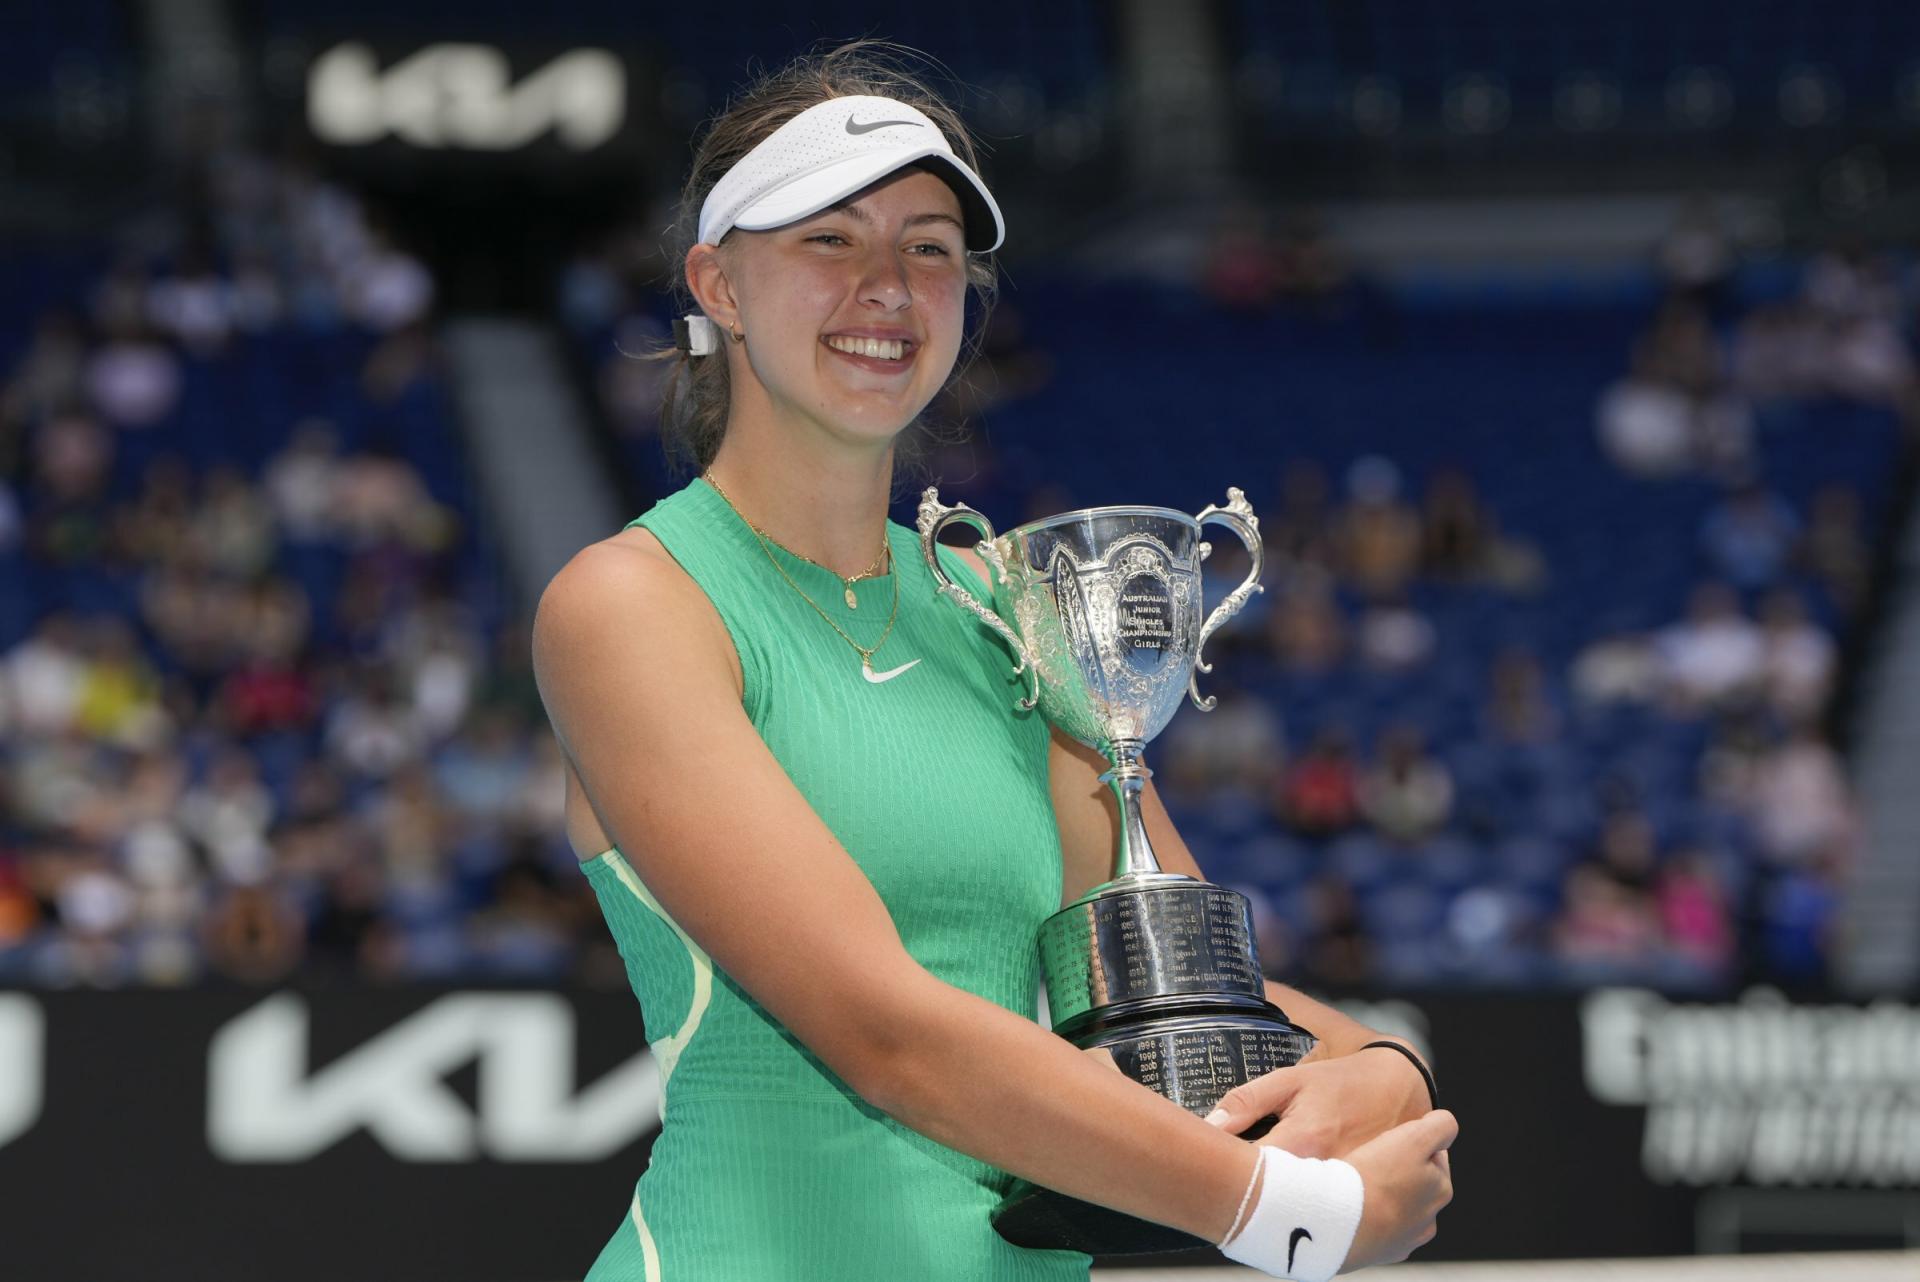 Slovensko má ďalší grandslamový titul. Jamrichová triumfovala v juniorskej dvojhre Australian Open